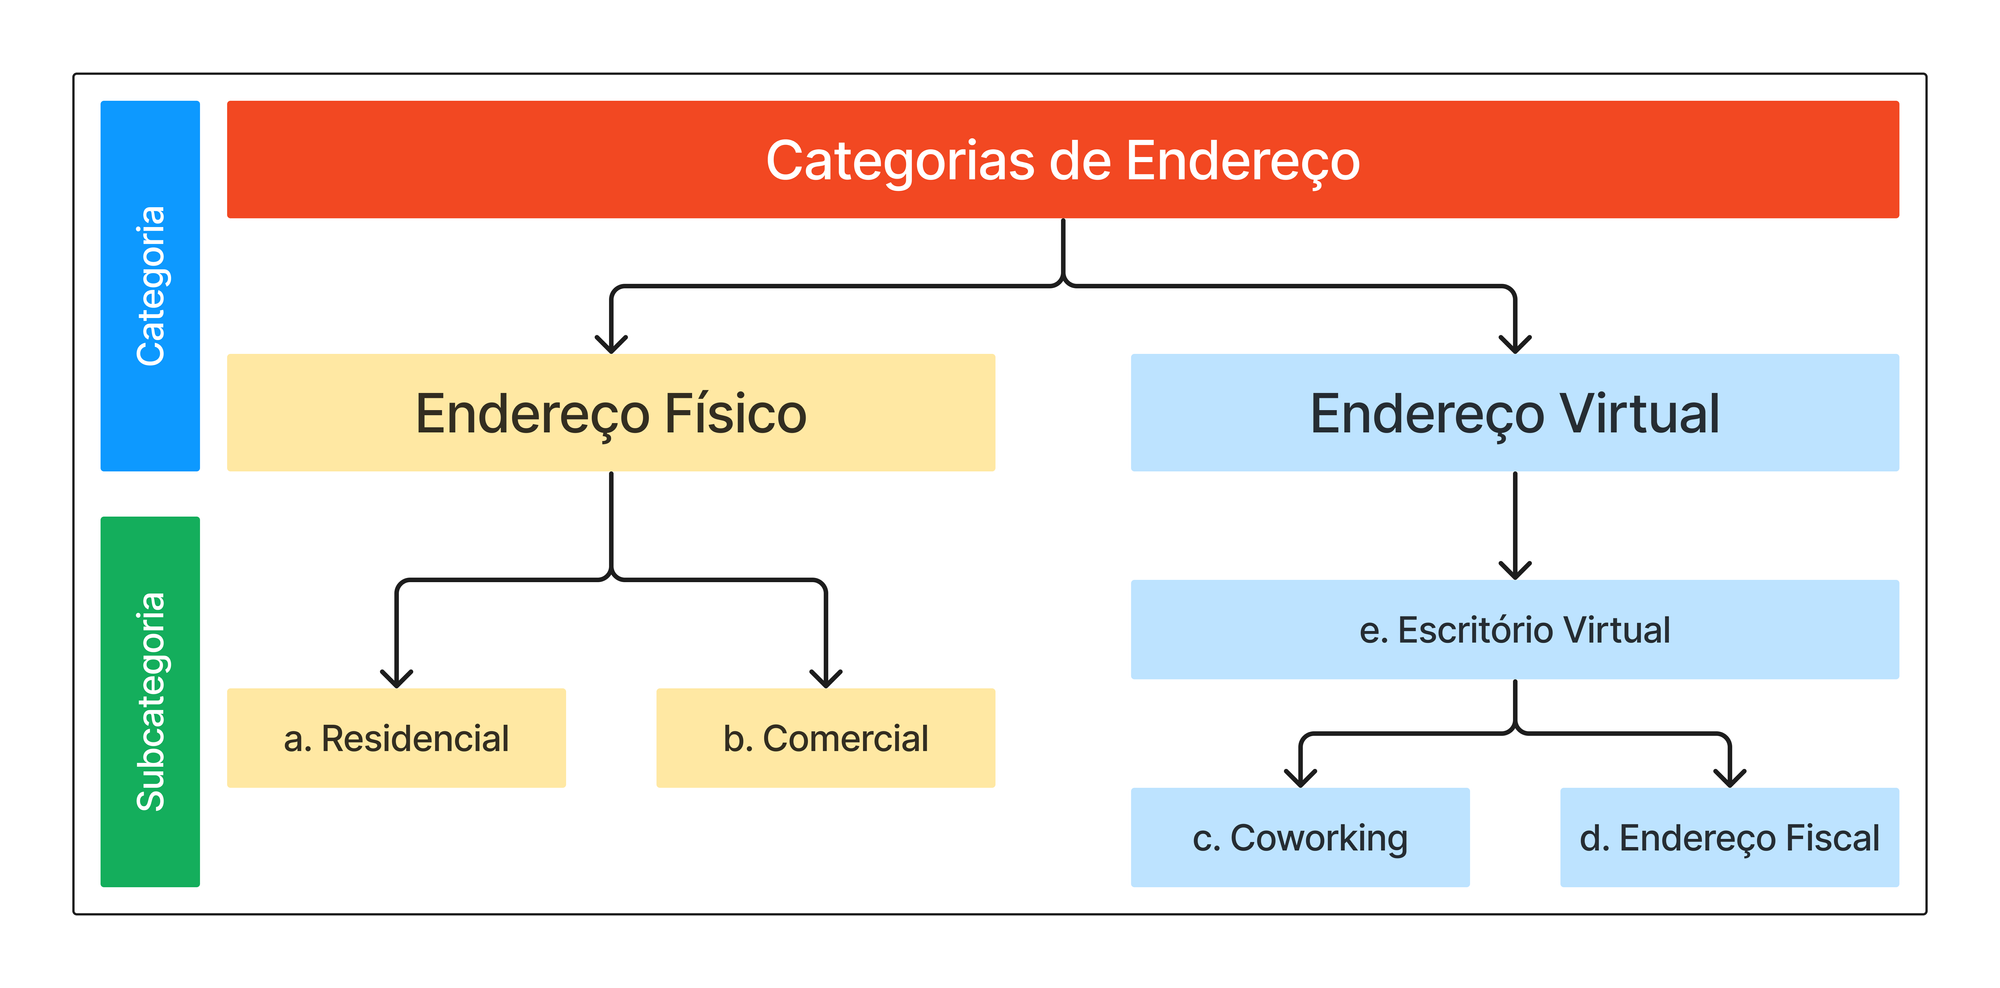 Fluxograma explicativo das categorias de endereço fiscal no Brasil.